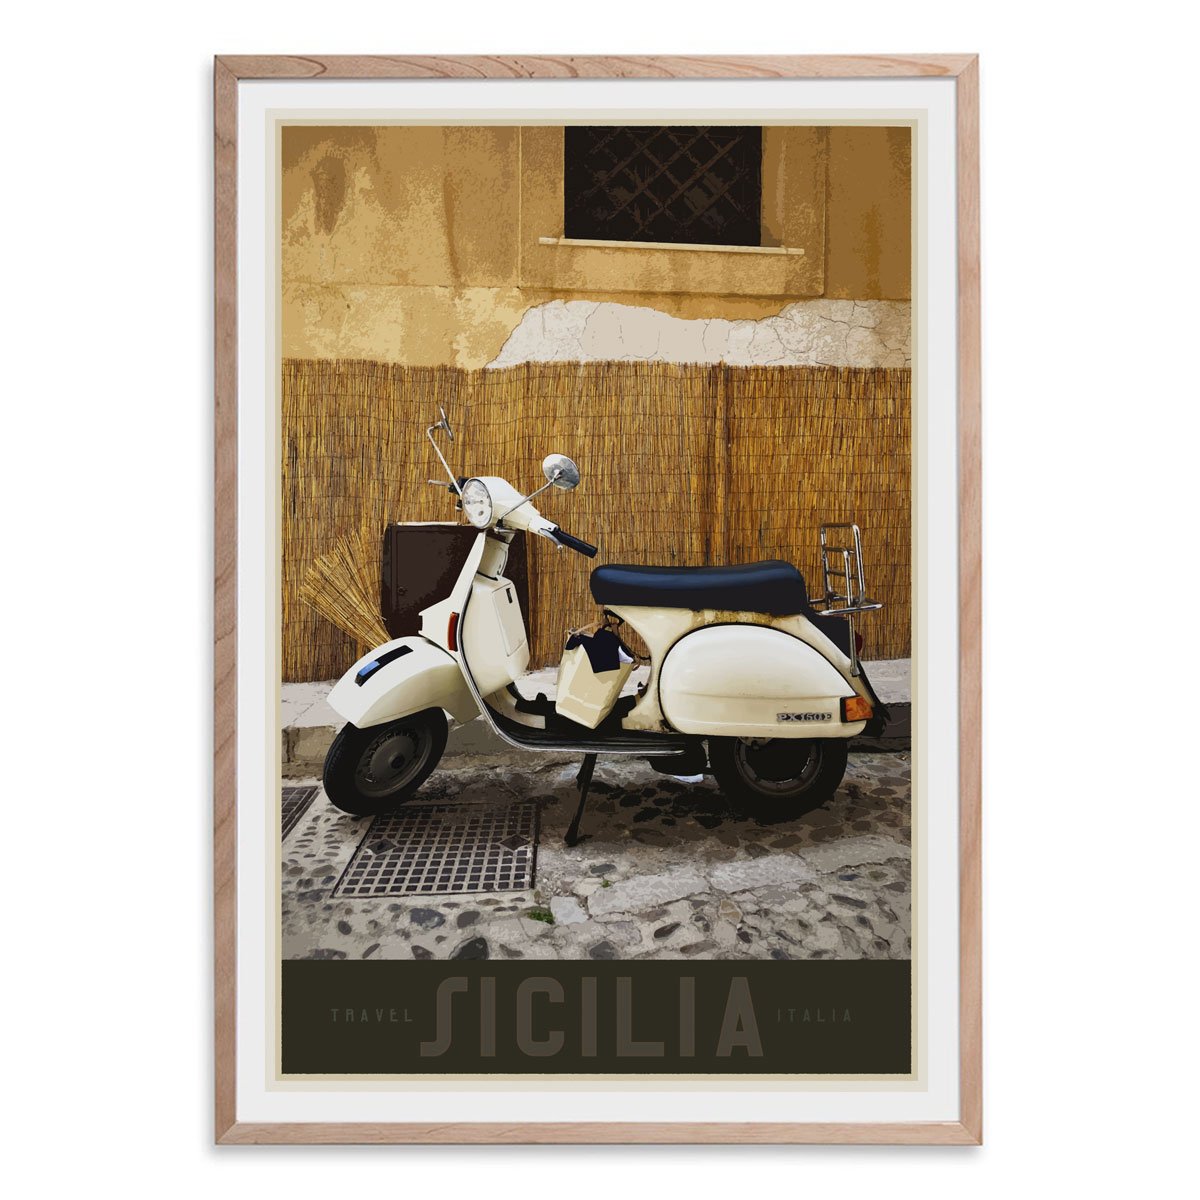 Sicily Vespa vintage travel style oak framed poster designed by places we luv